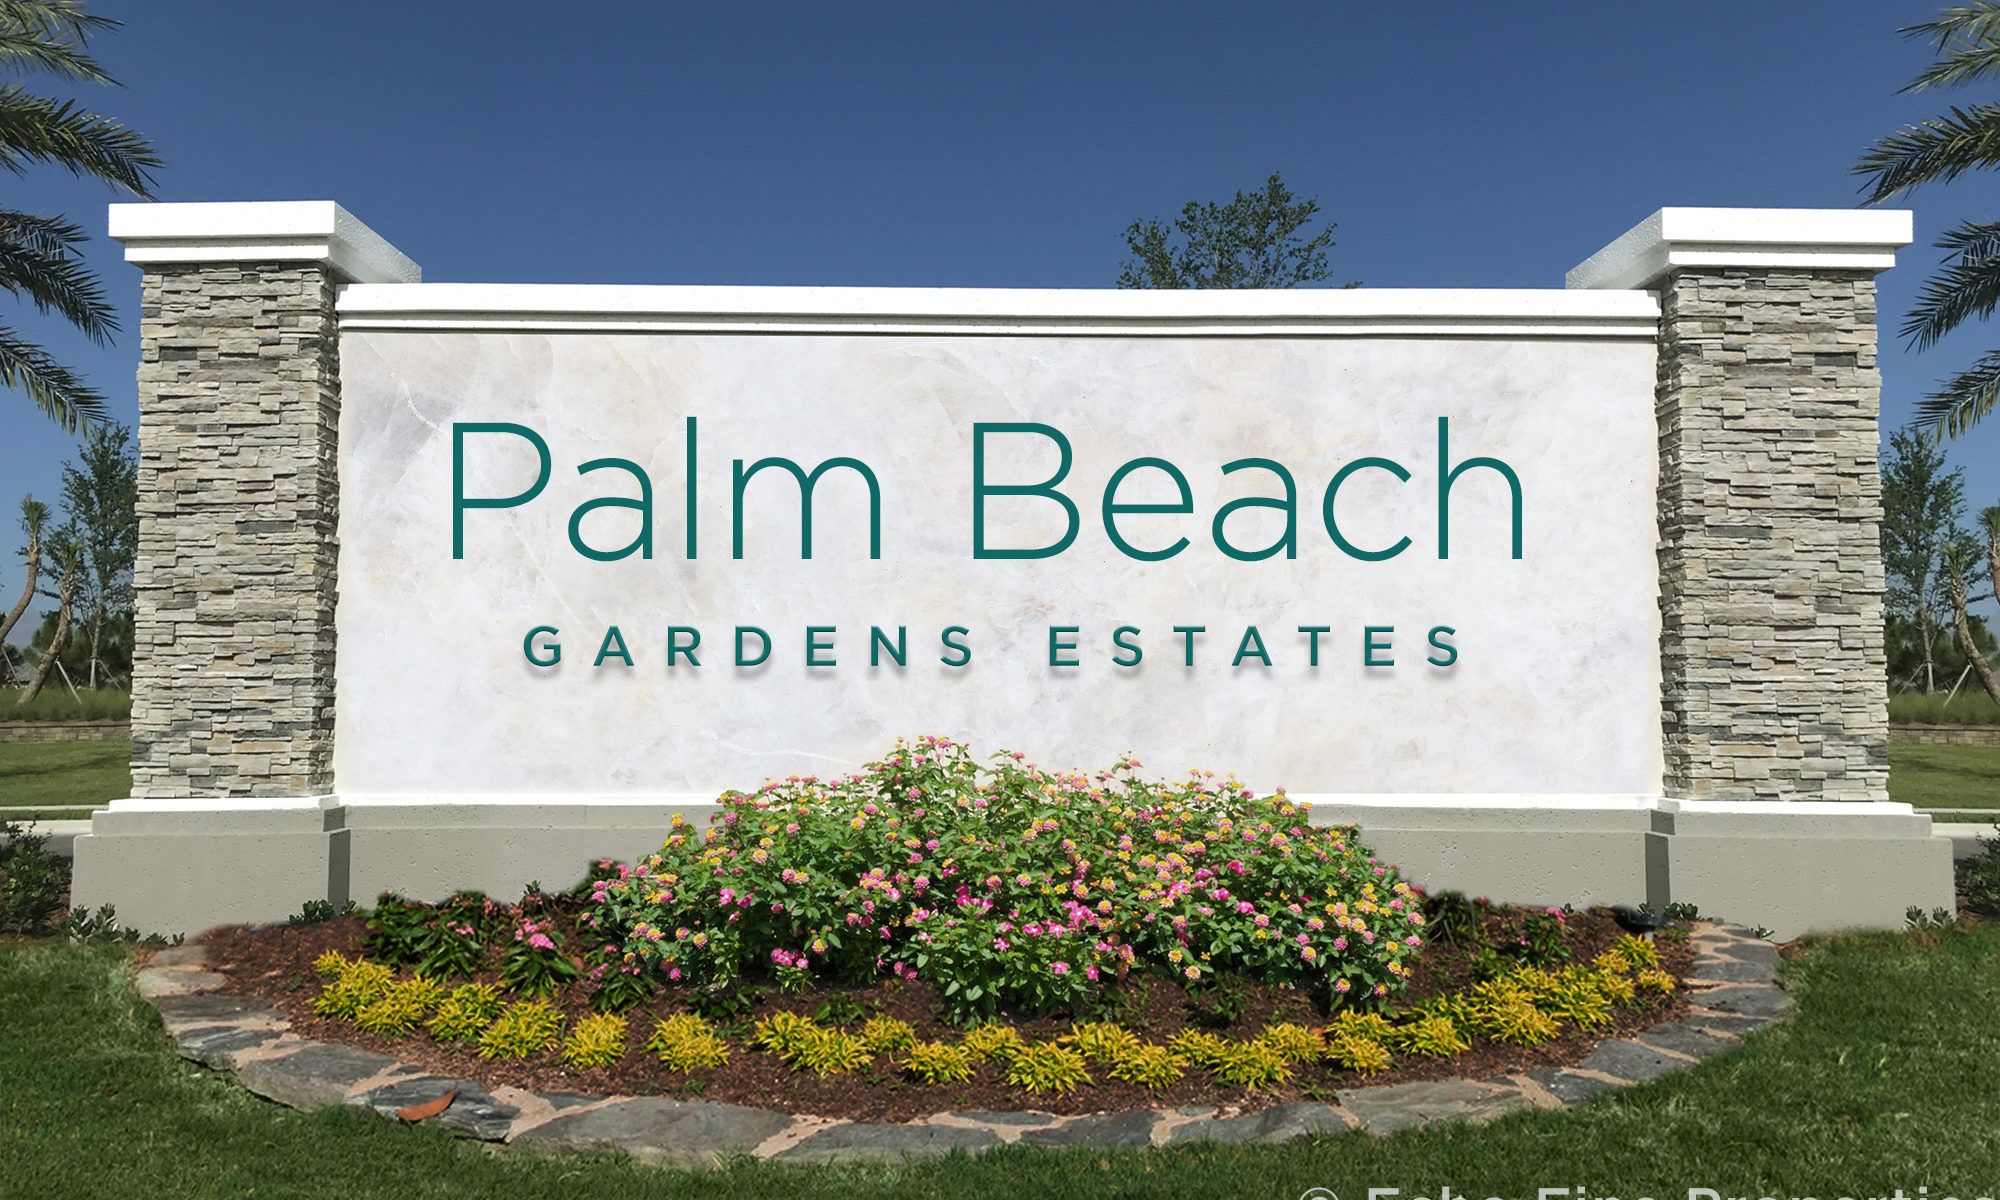 Palm Beach Gardens Estates